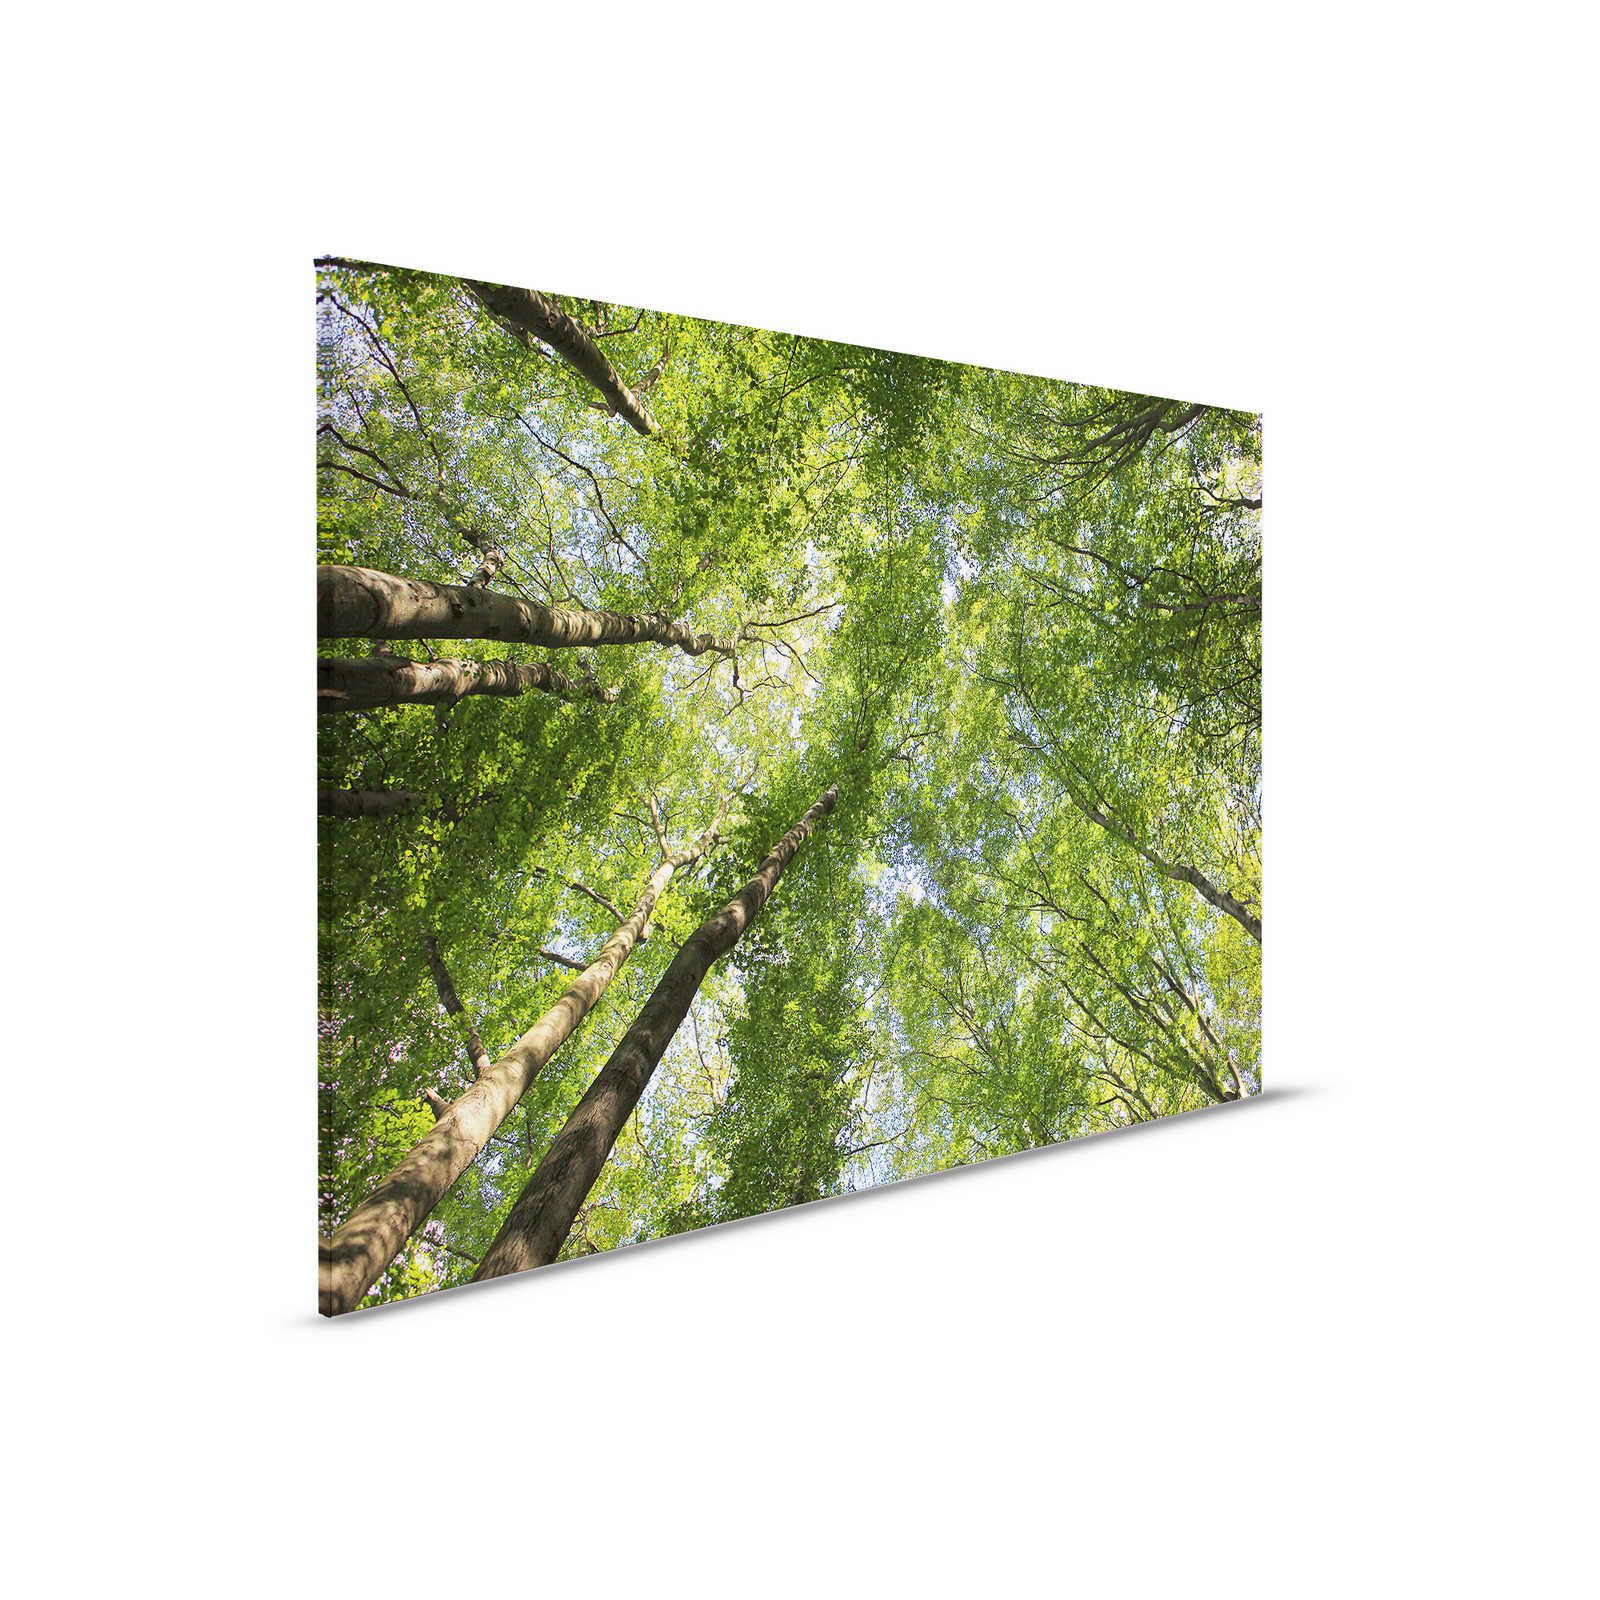 Toile de la canopée avec les cimes des arbres de la forêt de feuillus - 0,90 m x 0,60 m
